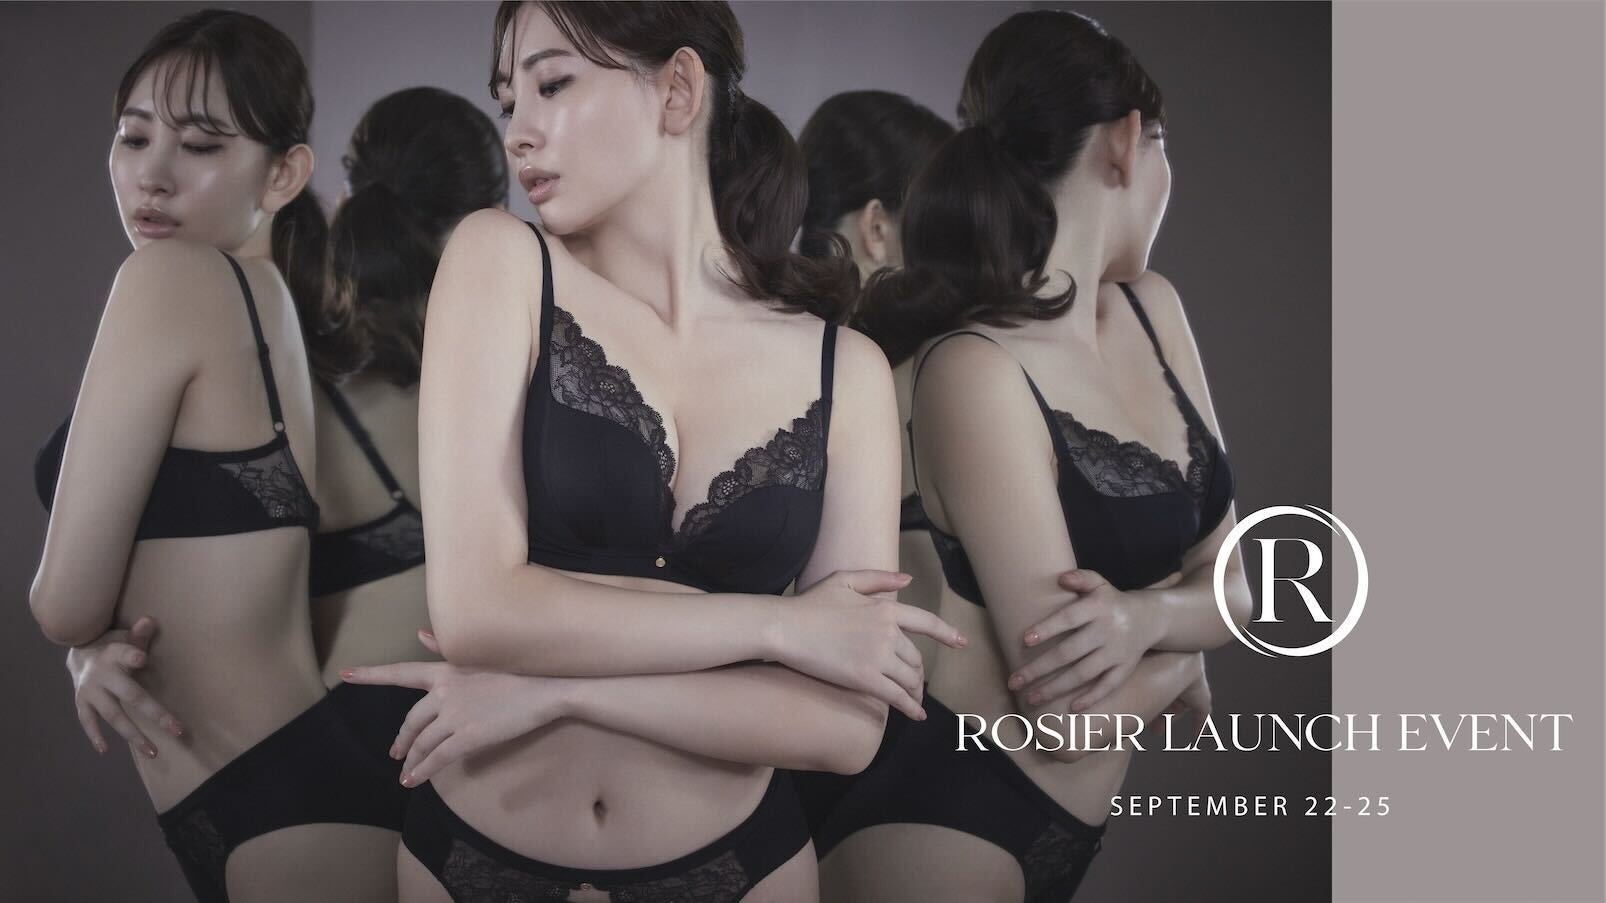 小嶋陽菜プロデュースのランジェリーブランド「ROSIER by Her lip to（ロジア バイ ハーリップトゥ）」が＜ROSIER LAUNCH EVENT＞を開催。